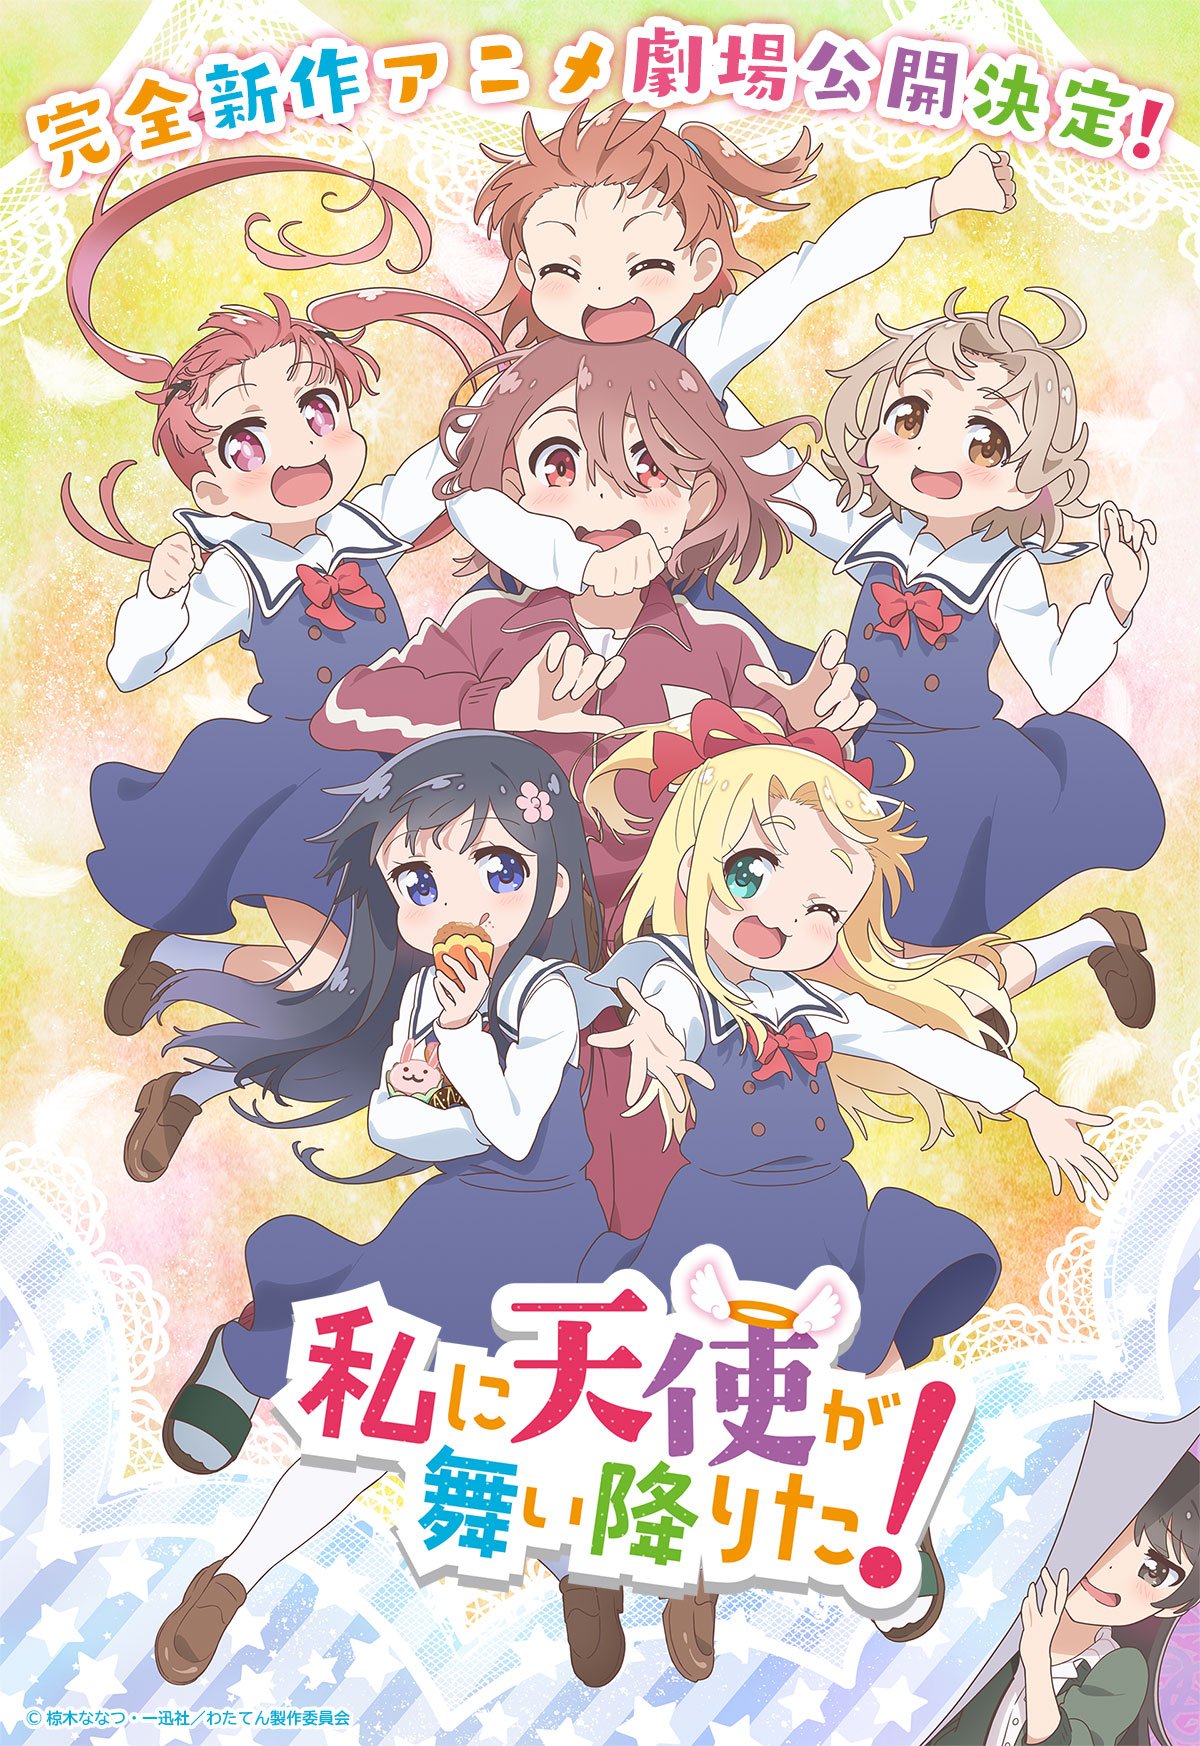 Watashi ni Tenshi ga Maiorita!” Anime Gets New Visual, Main Voice